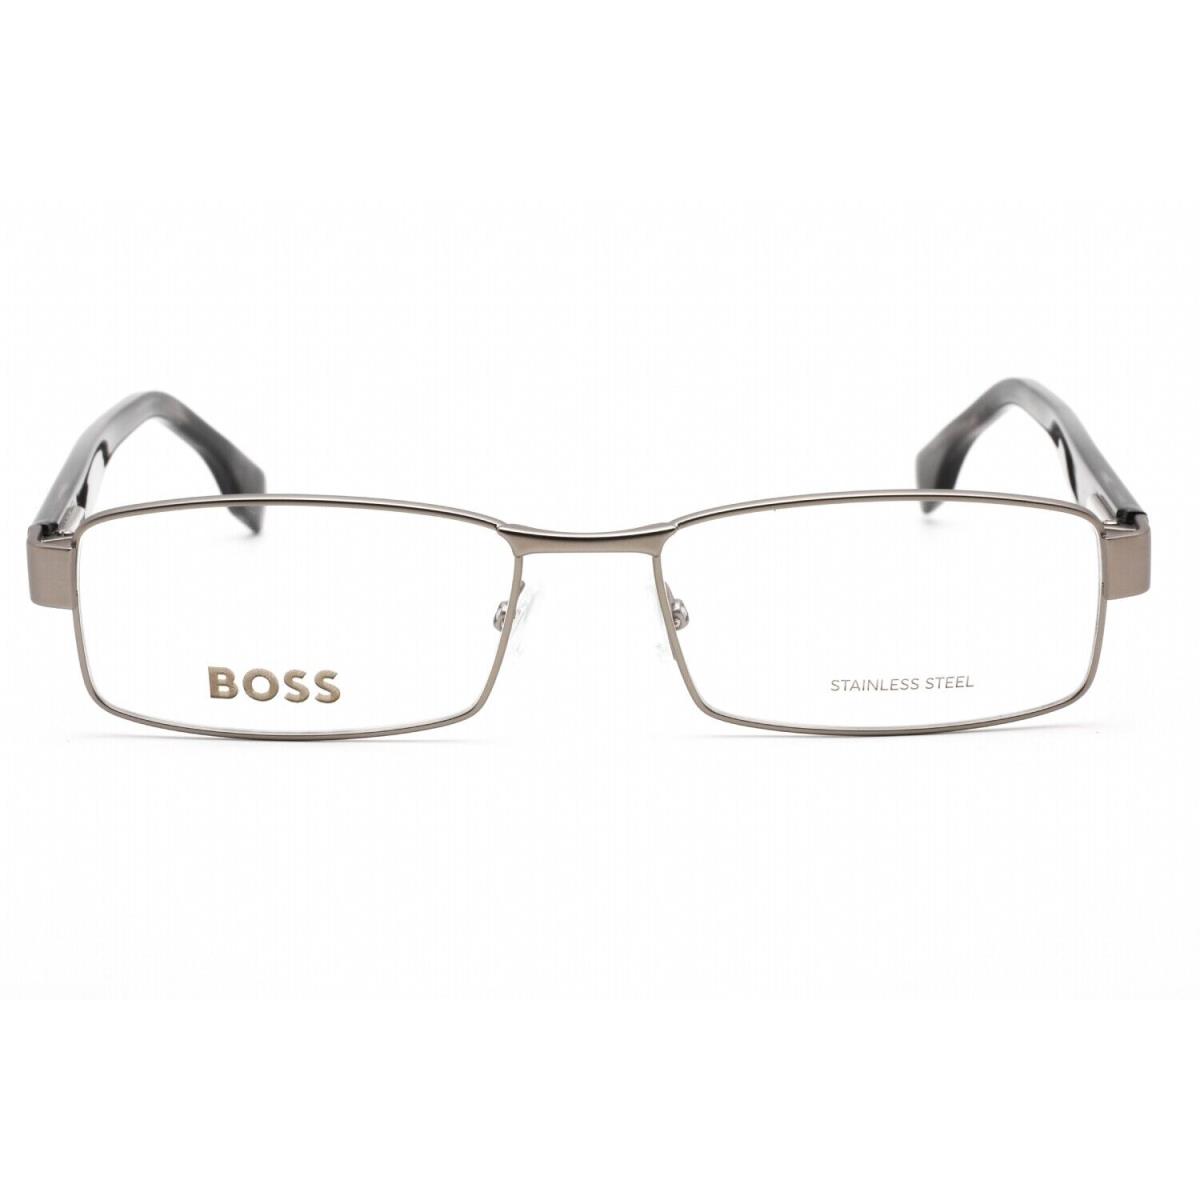 Hugo Boss Boss 1519 Raa Eyeglasses Matte Ruthenium Grey Frame 56mm